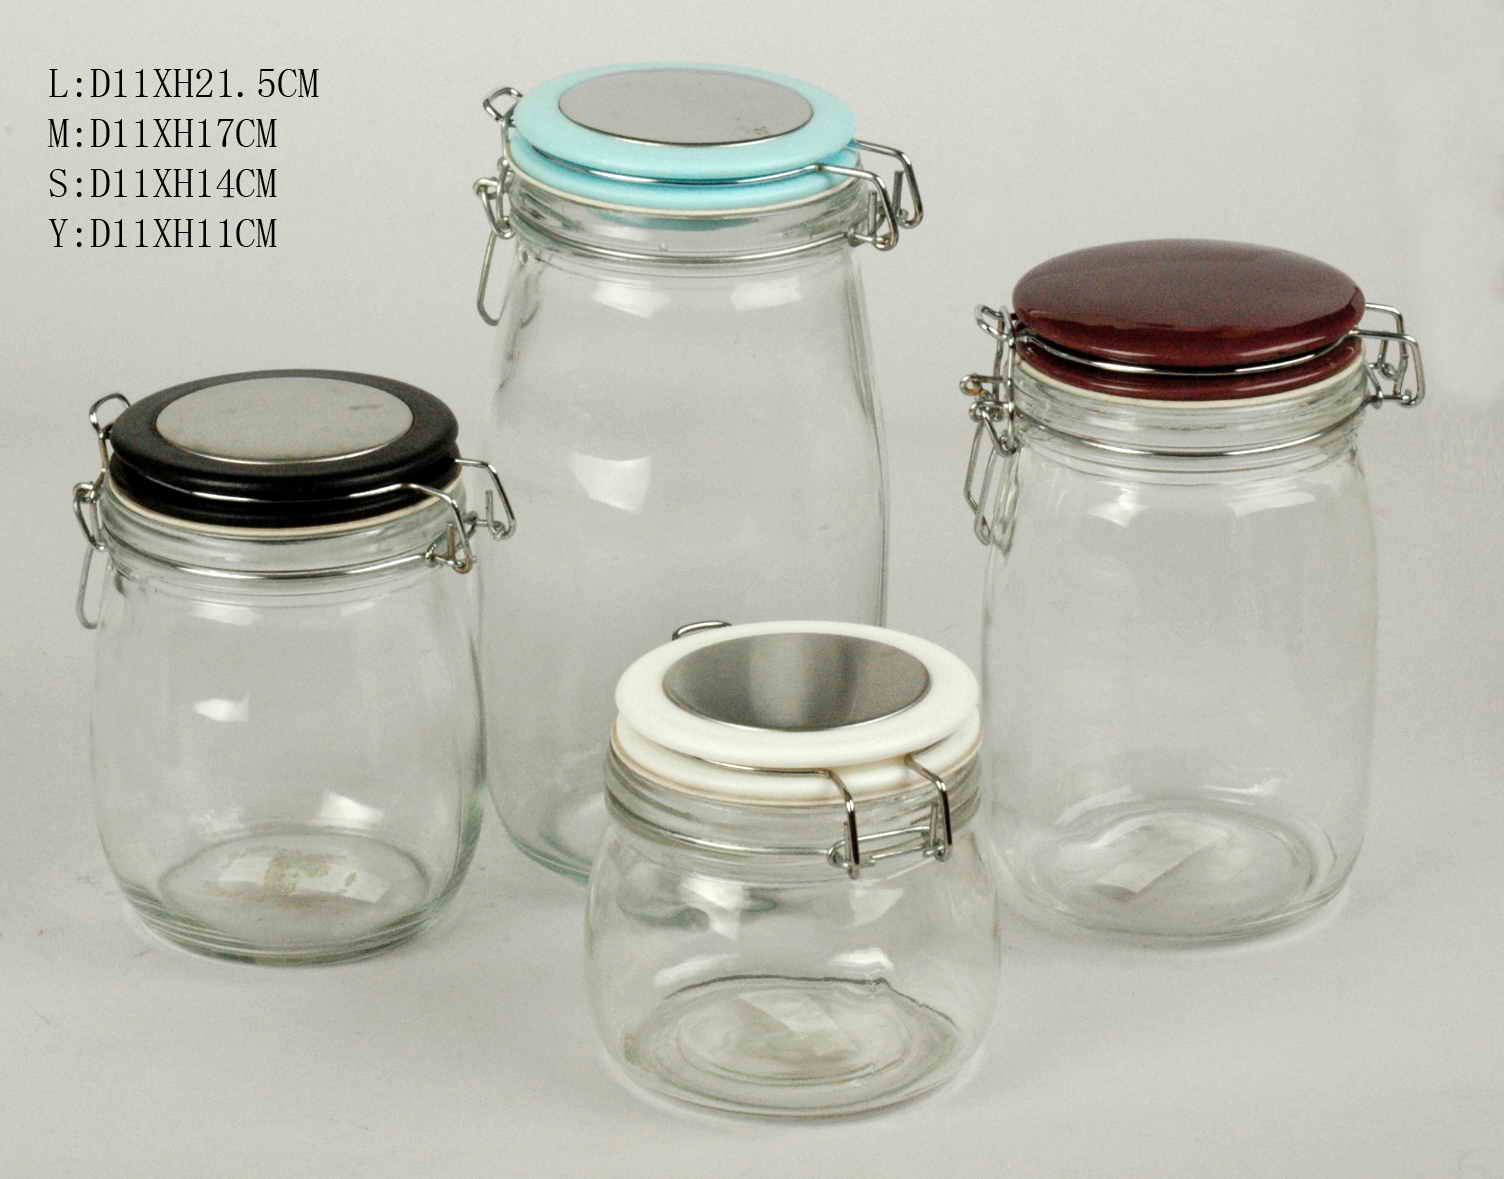 4 Pcs Storage Jar Set With Ceramic Lids